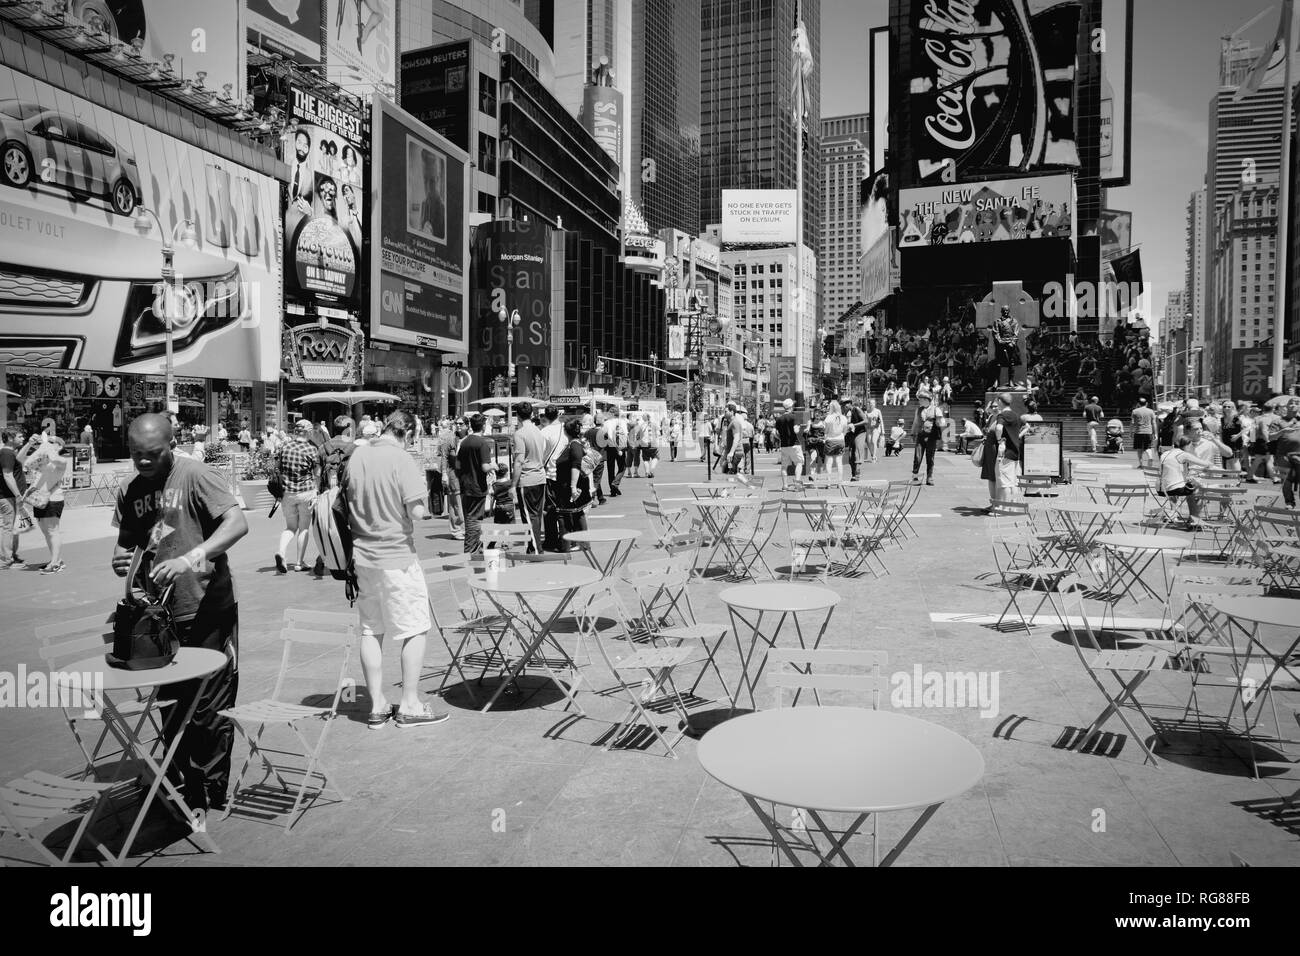 NEW YORK, Stati Uniti d'America - luglio 7, 2013: persone visitare Times Square a New York. Times Square è uno dei monumenti più conosciuti in tutto il mondo. Più di 300.000 Foto Stock